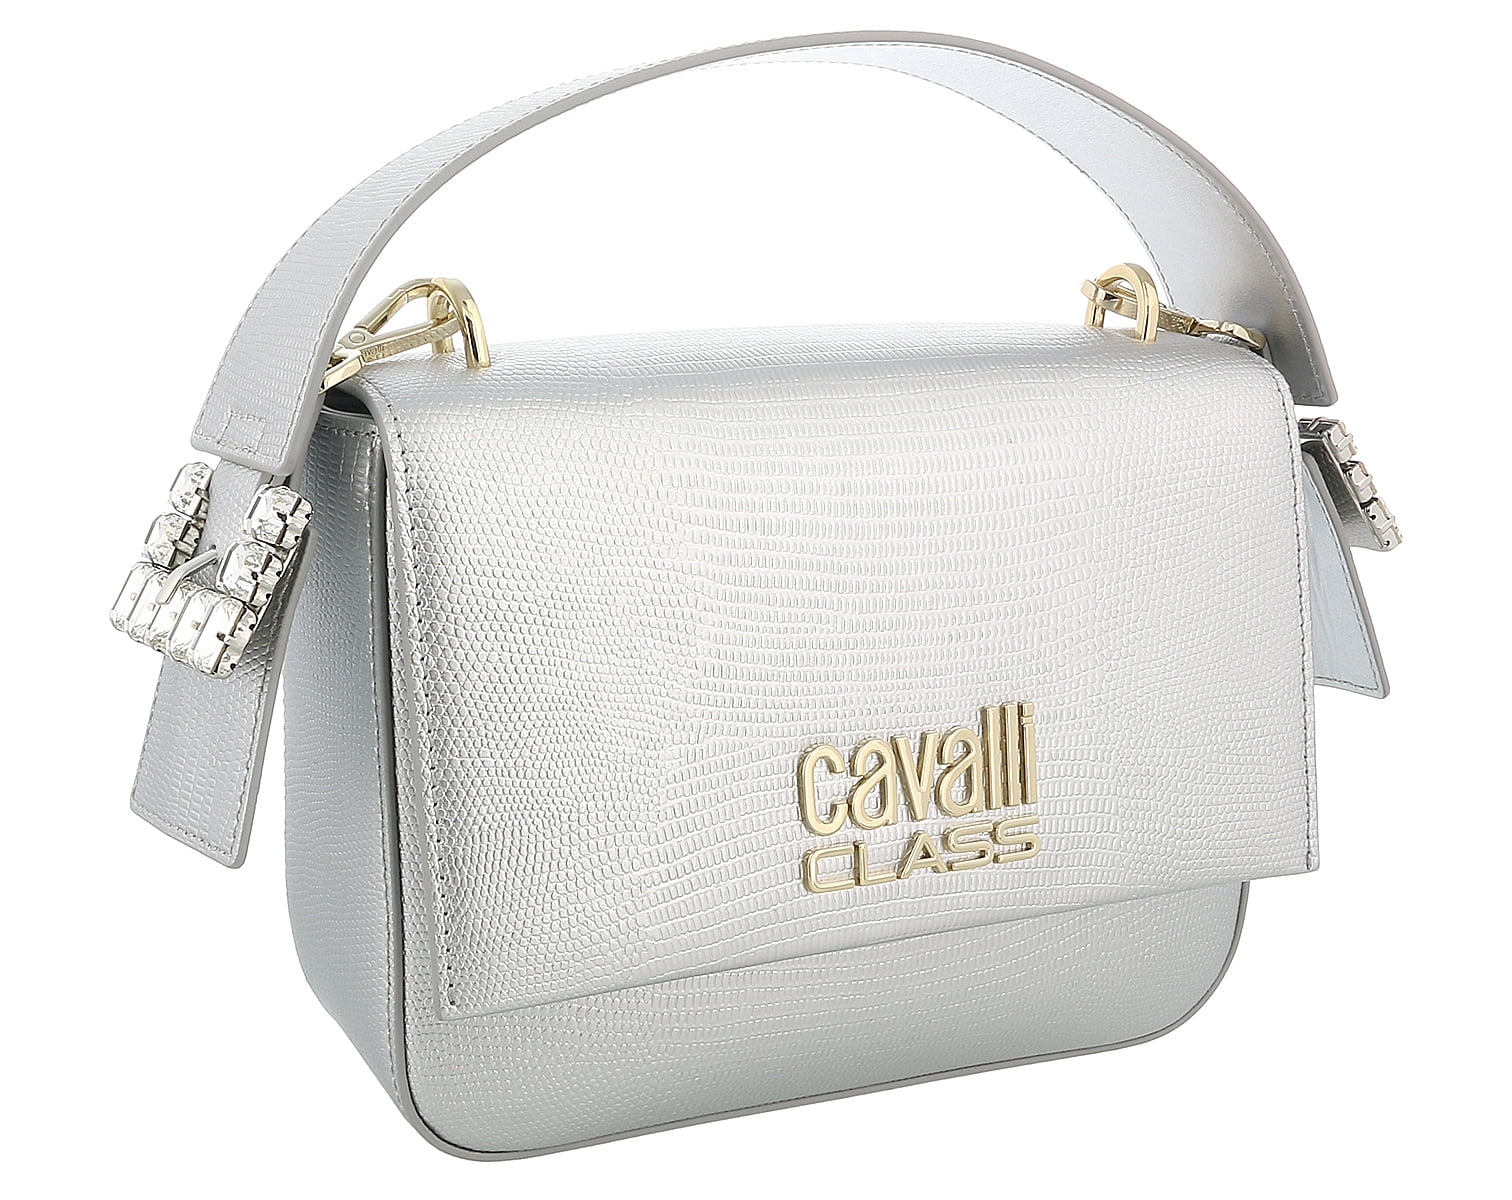 Roberto Cavalli Gold Capsule Bag Capsule Walmart.com